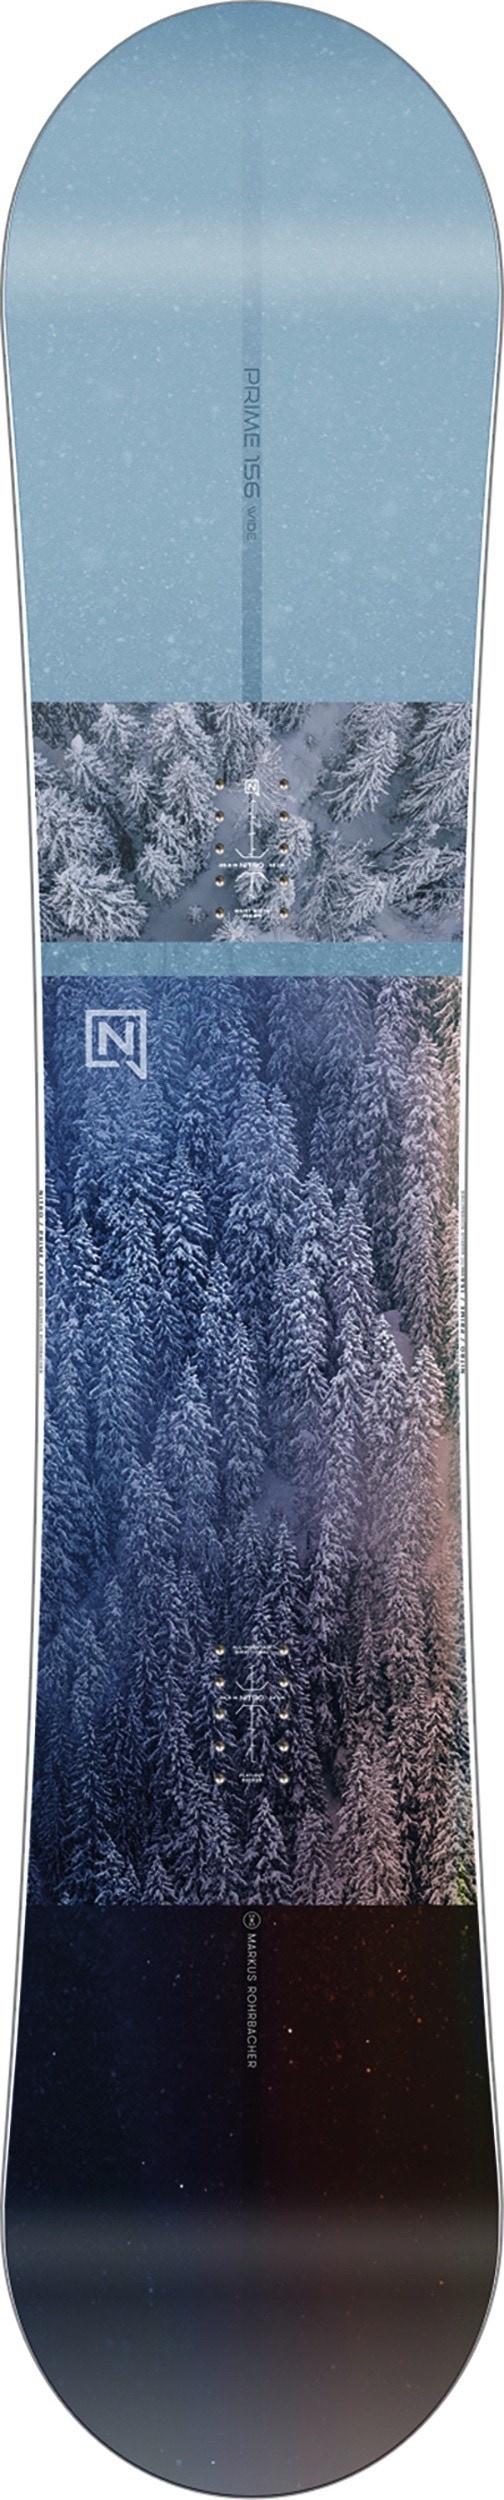 Nitro Prime view wide Snowboard 24 leicht hochwertig, Länge in cm: 159